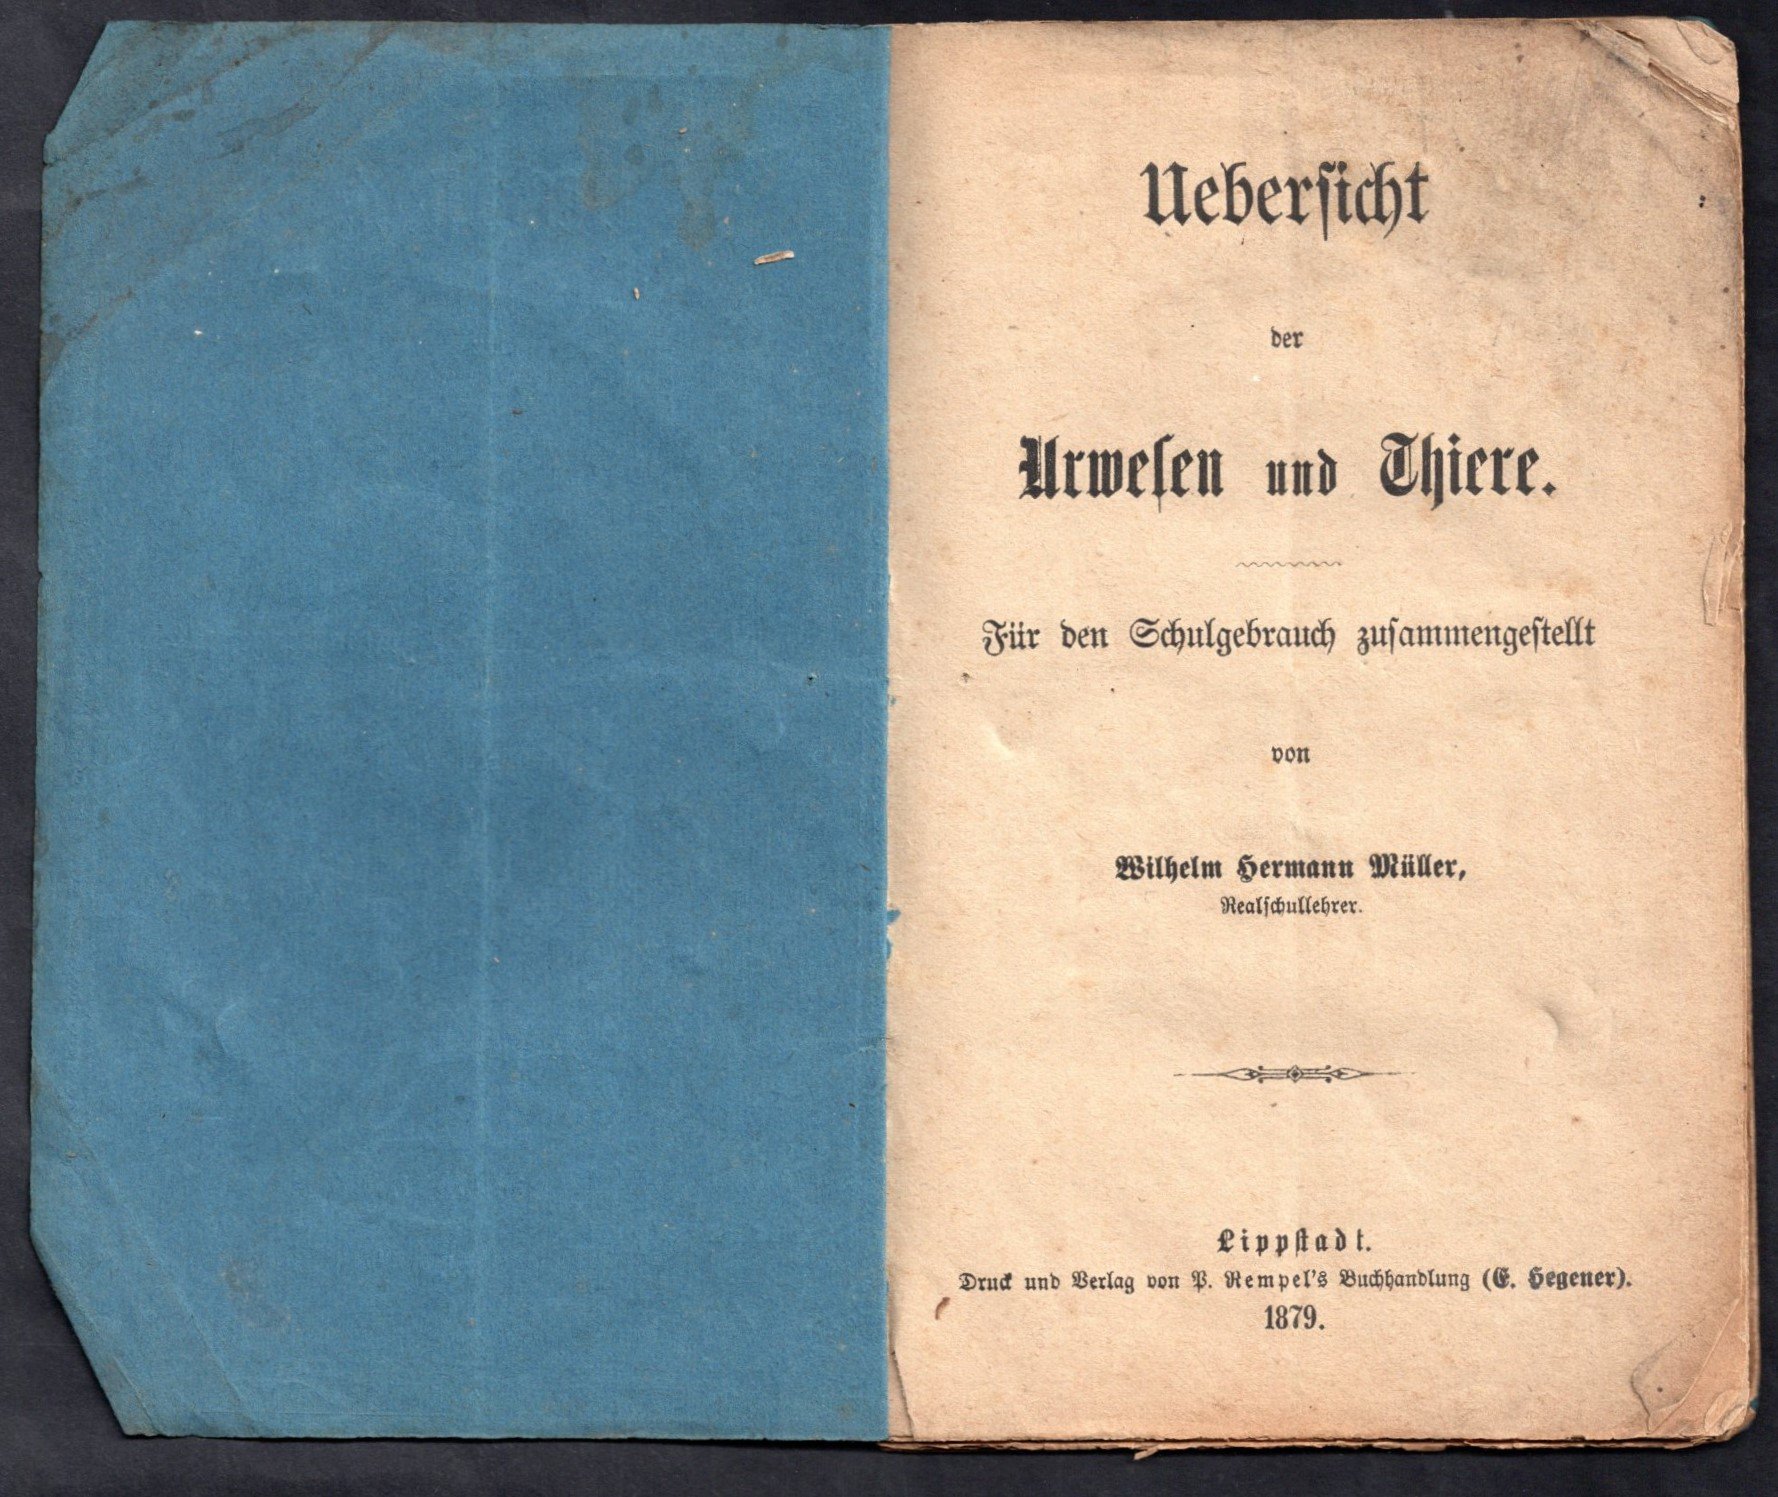 Broschüre: Uebersicht der Urwesen und Thiere; Wilhelm Hermann Müller 1879 (Stadtmuseum Lippstadt RR-F)